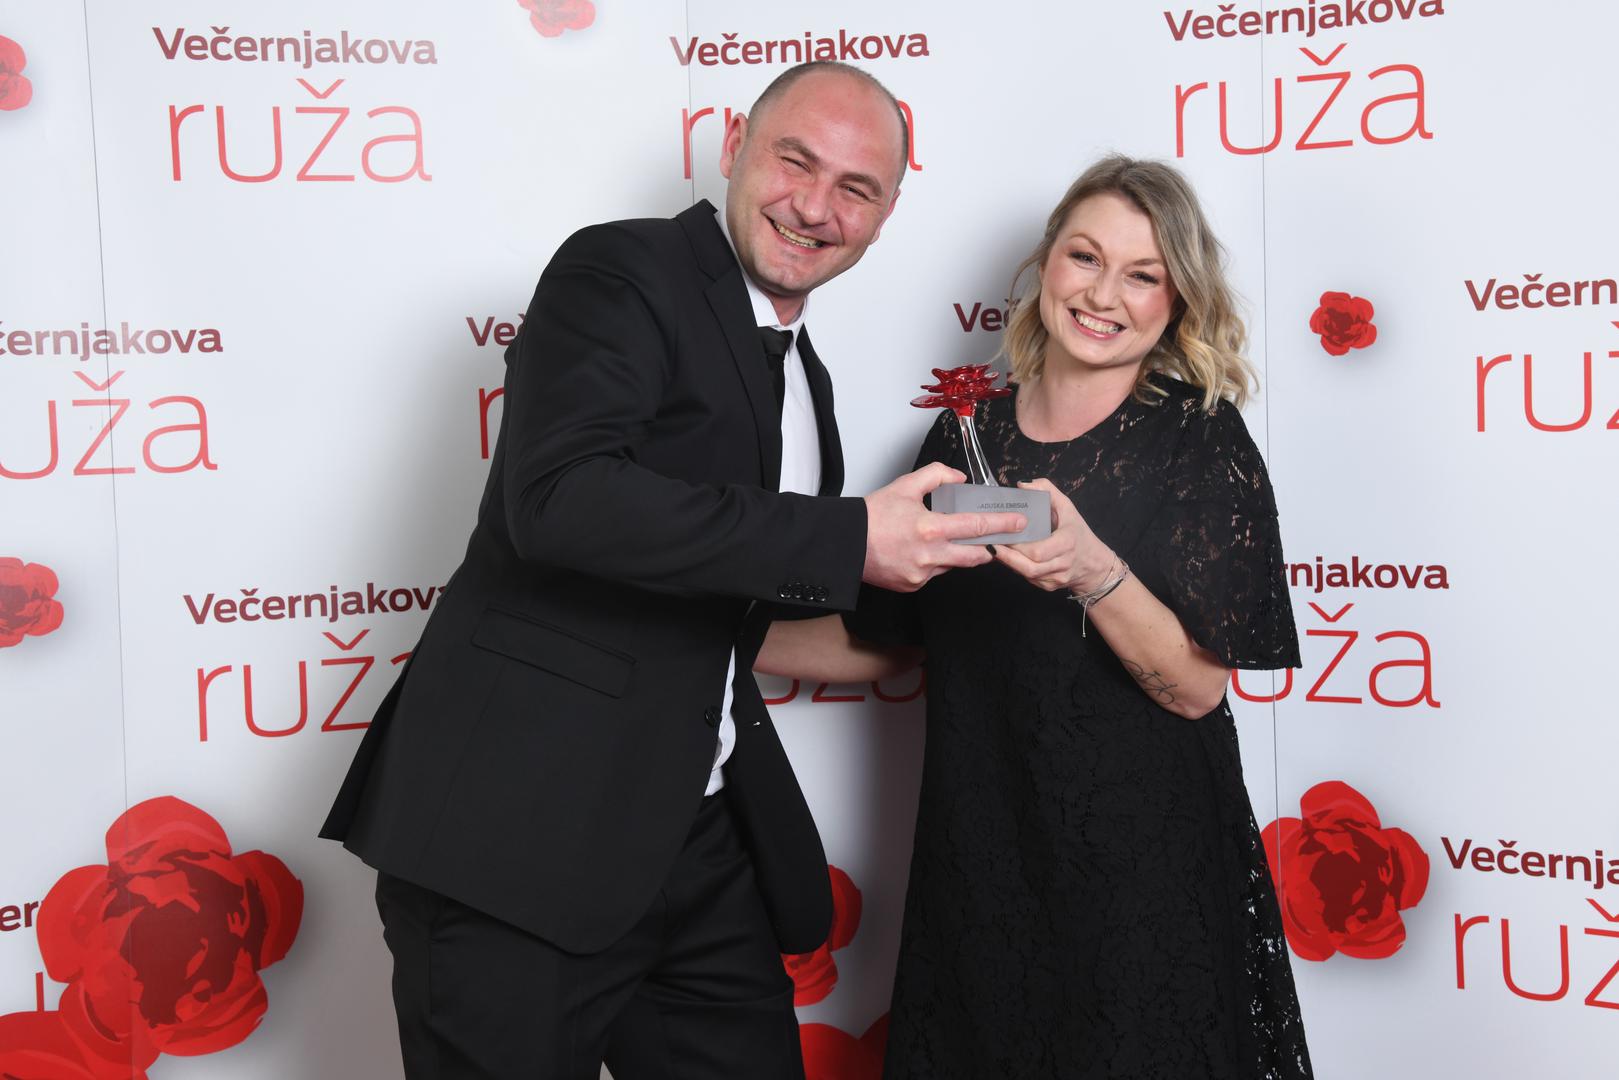 Marko Tomšić i Ivana Pevec osvojili su Ružu u kategoriji radijska emisija godine